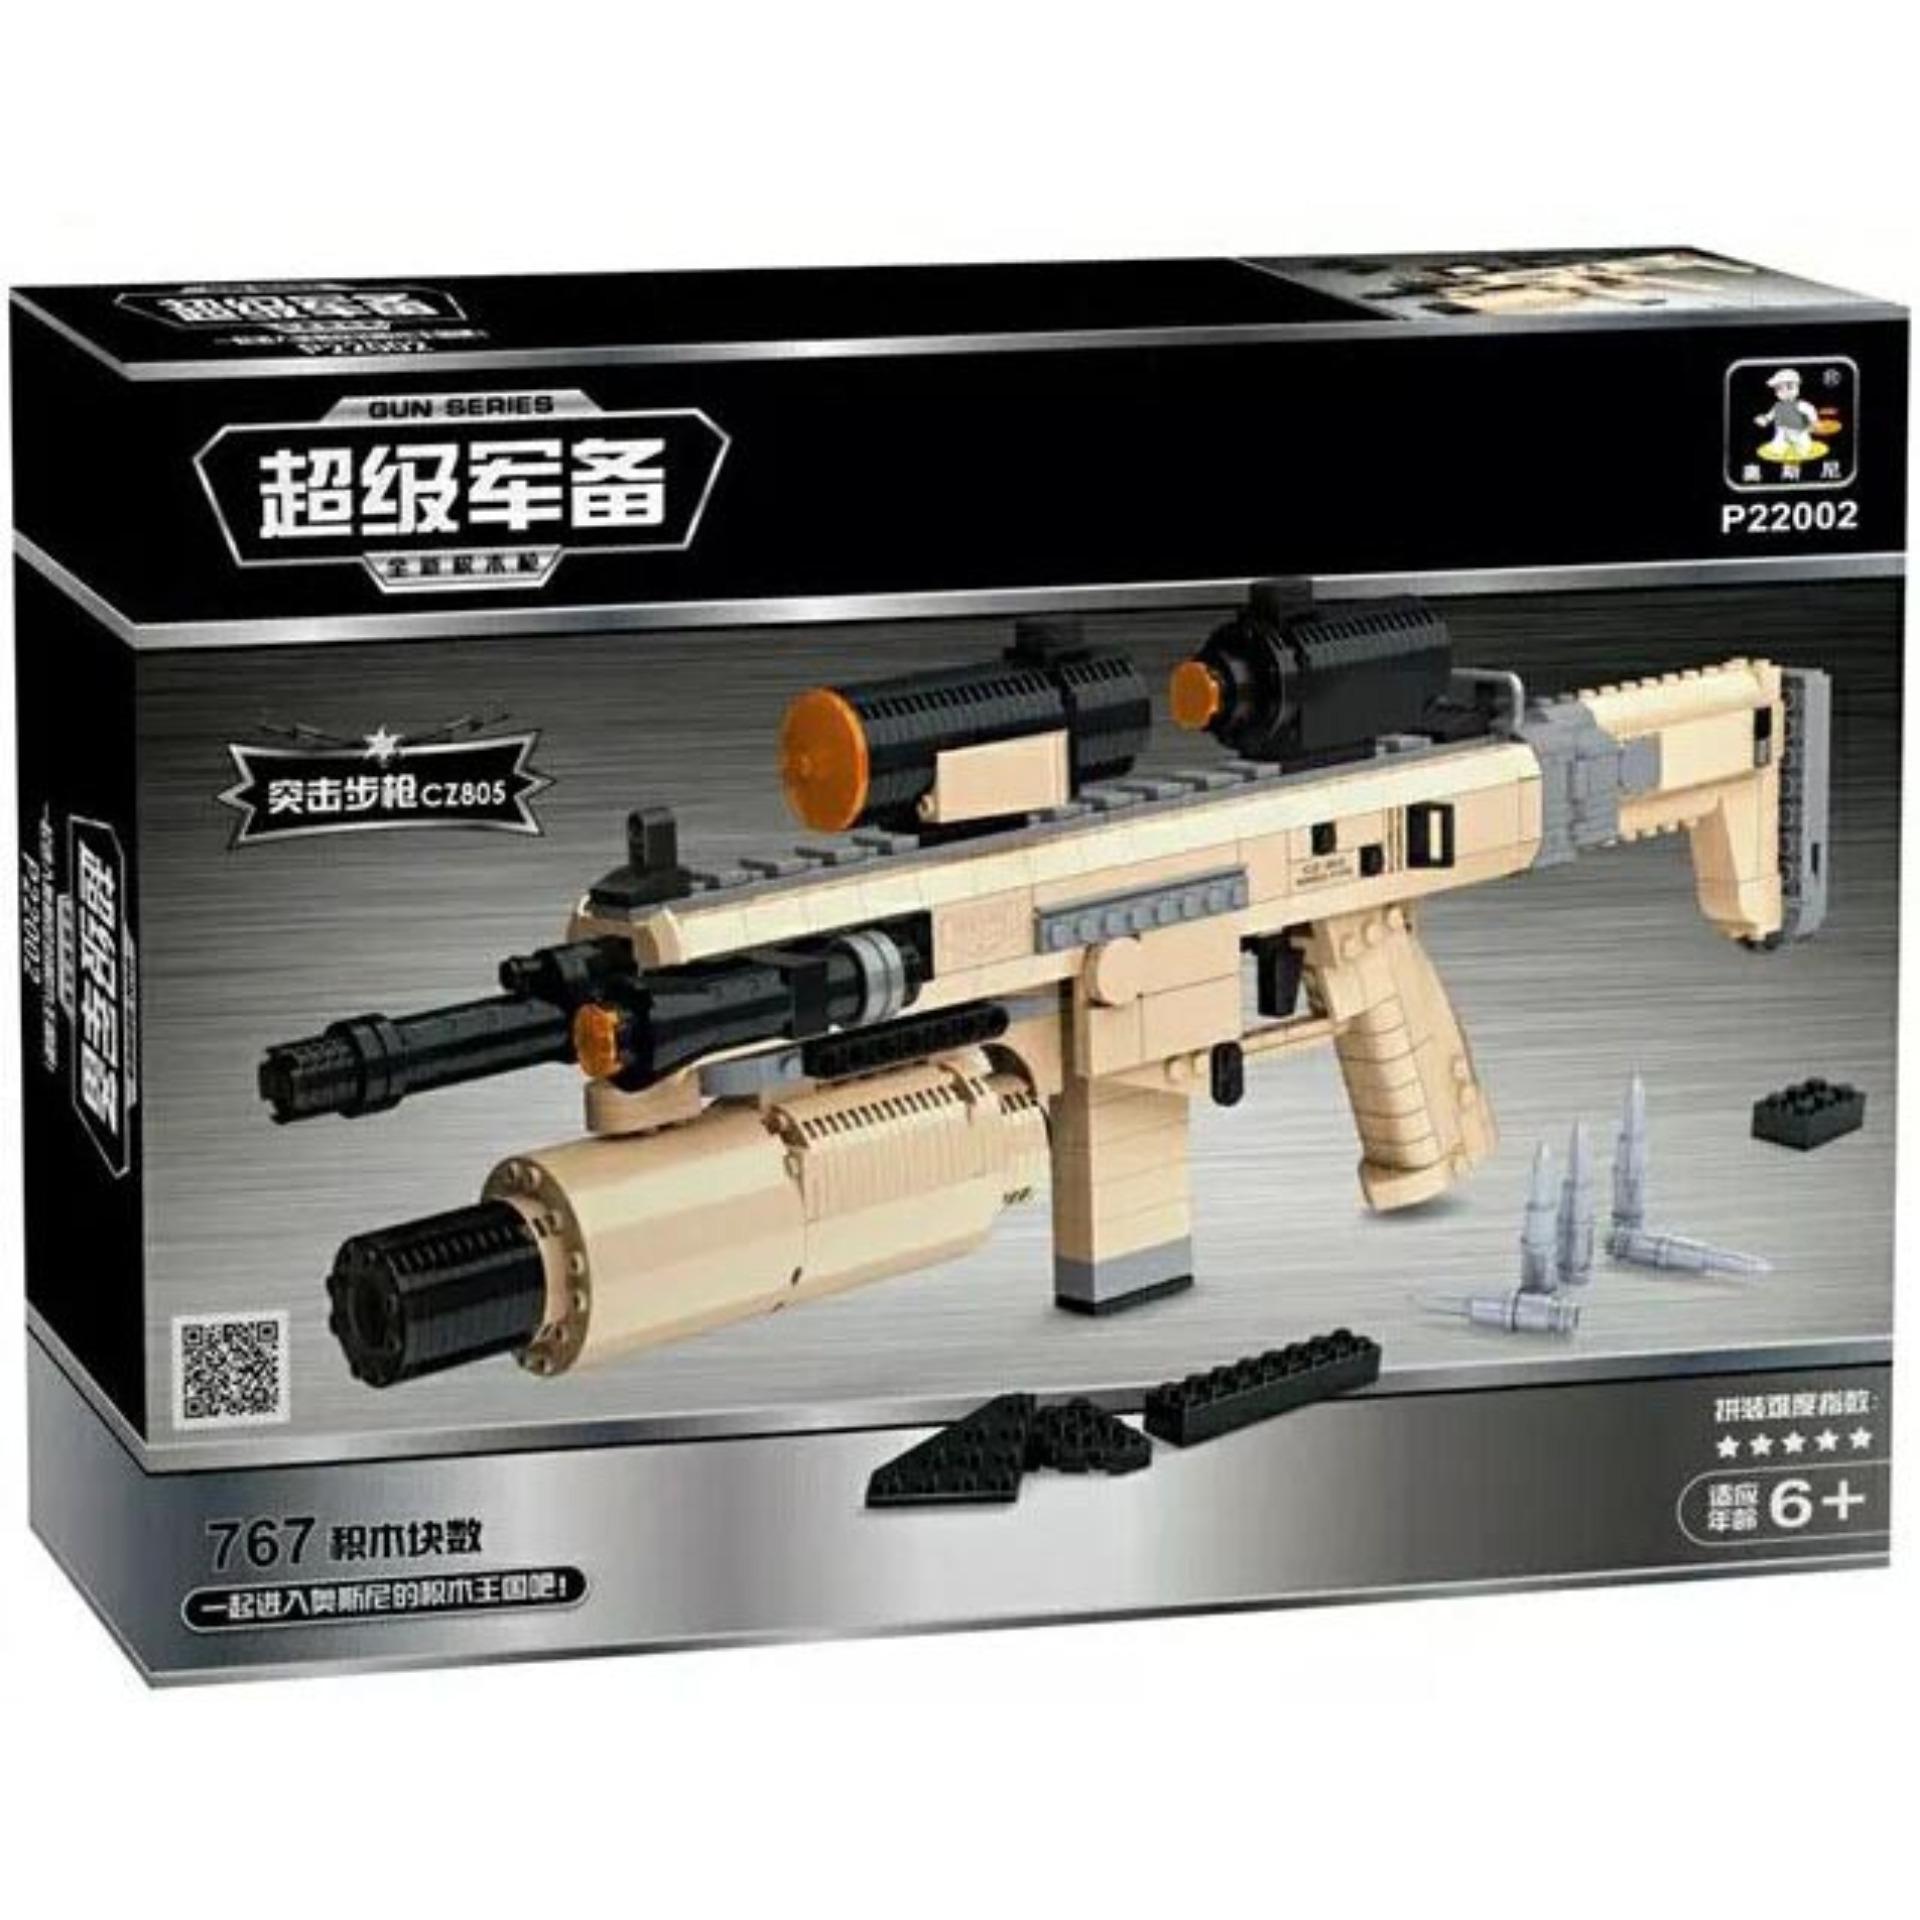 Bộ đồ chơi lắp ráp súng trường P22002